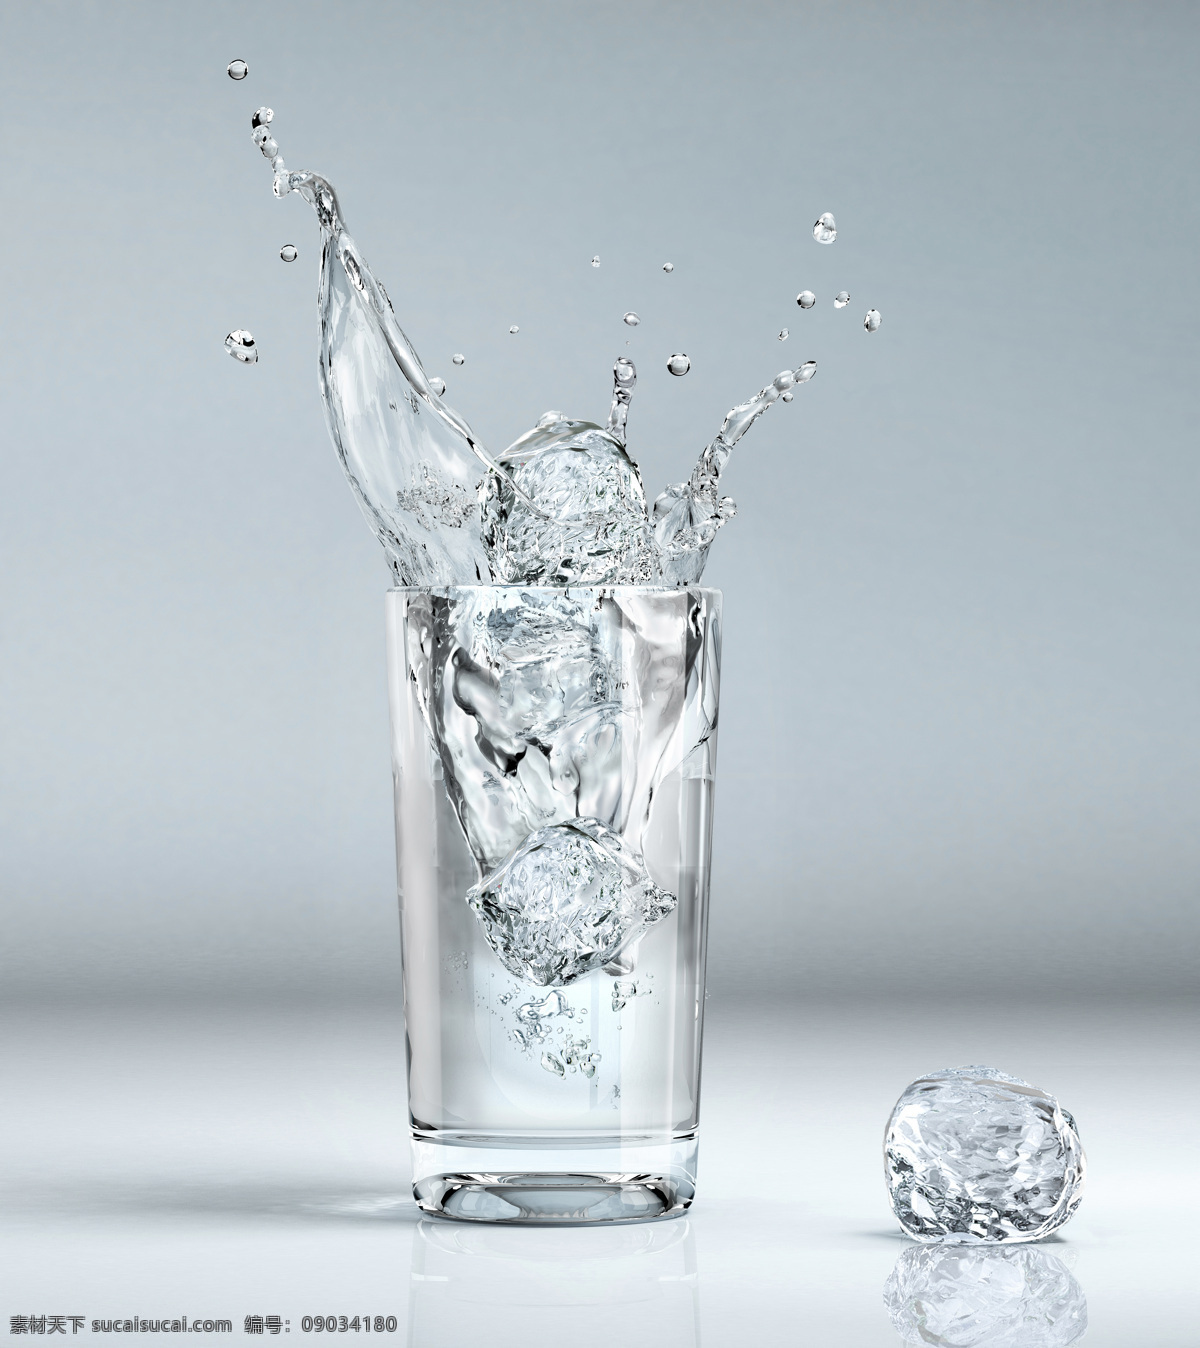 冰块 溅 水花 杯子 落下 水 溅起 水珠 动感 冰块图片 生活百科